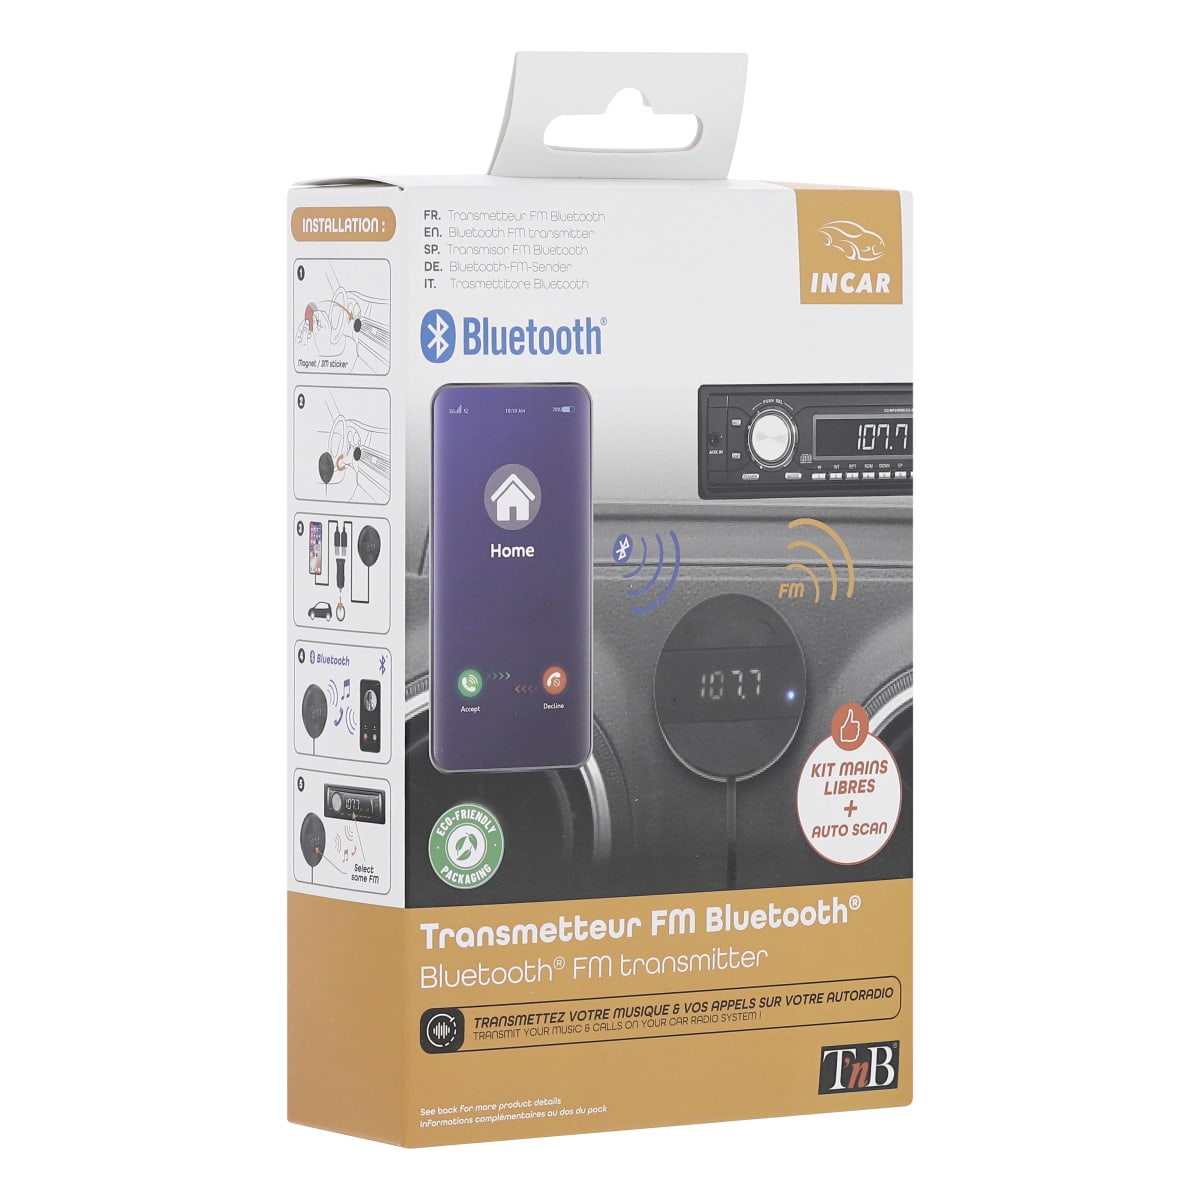 Transmetteur FM Bluetooth kit mains libres TNB - Auto5